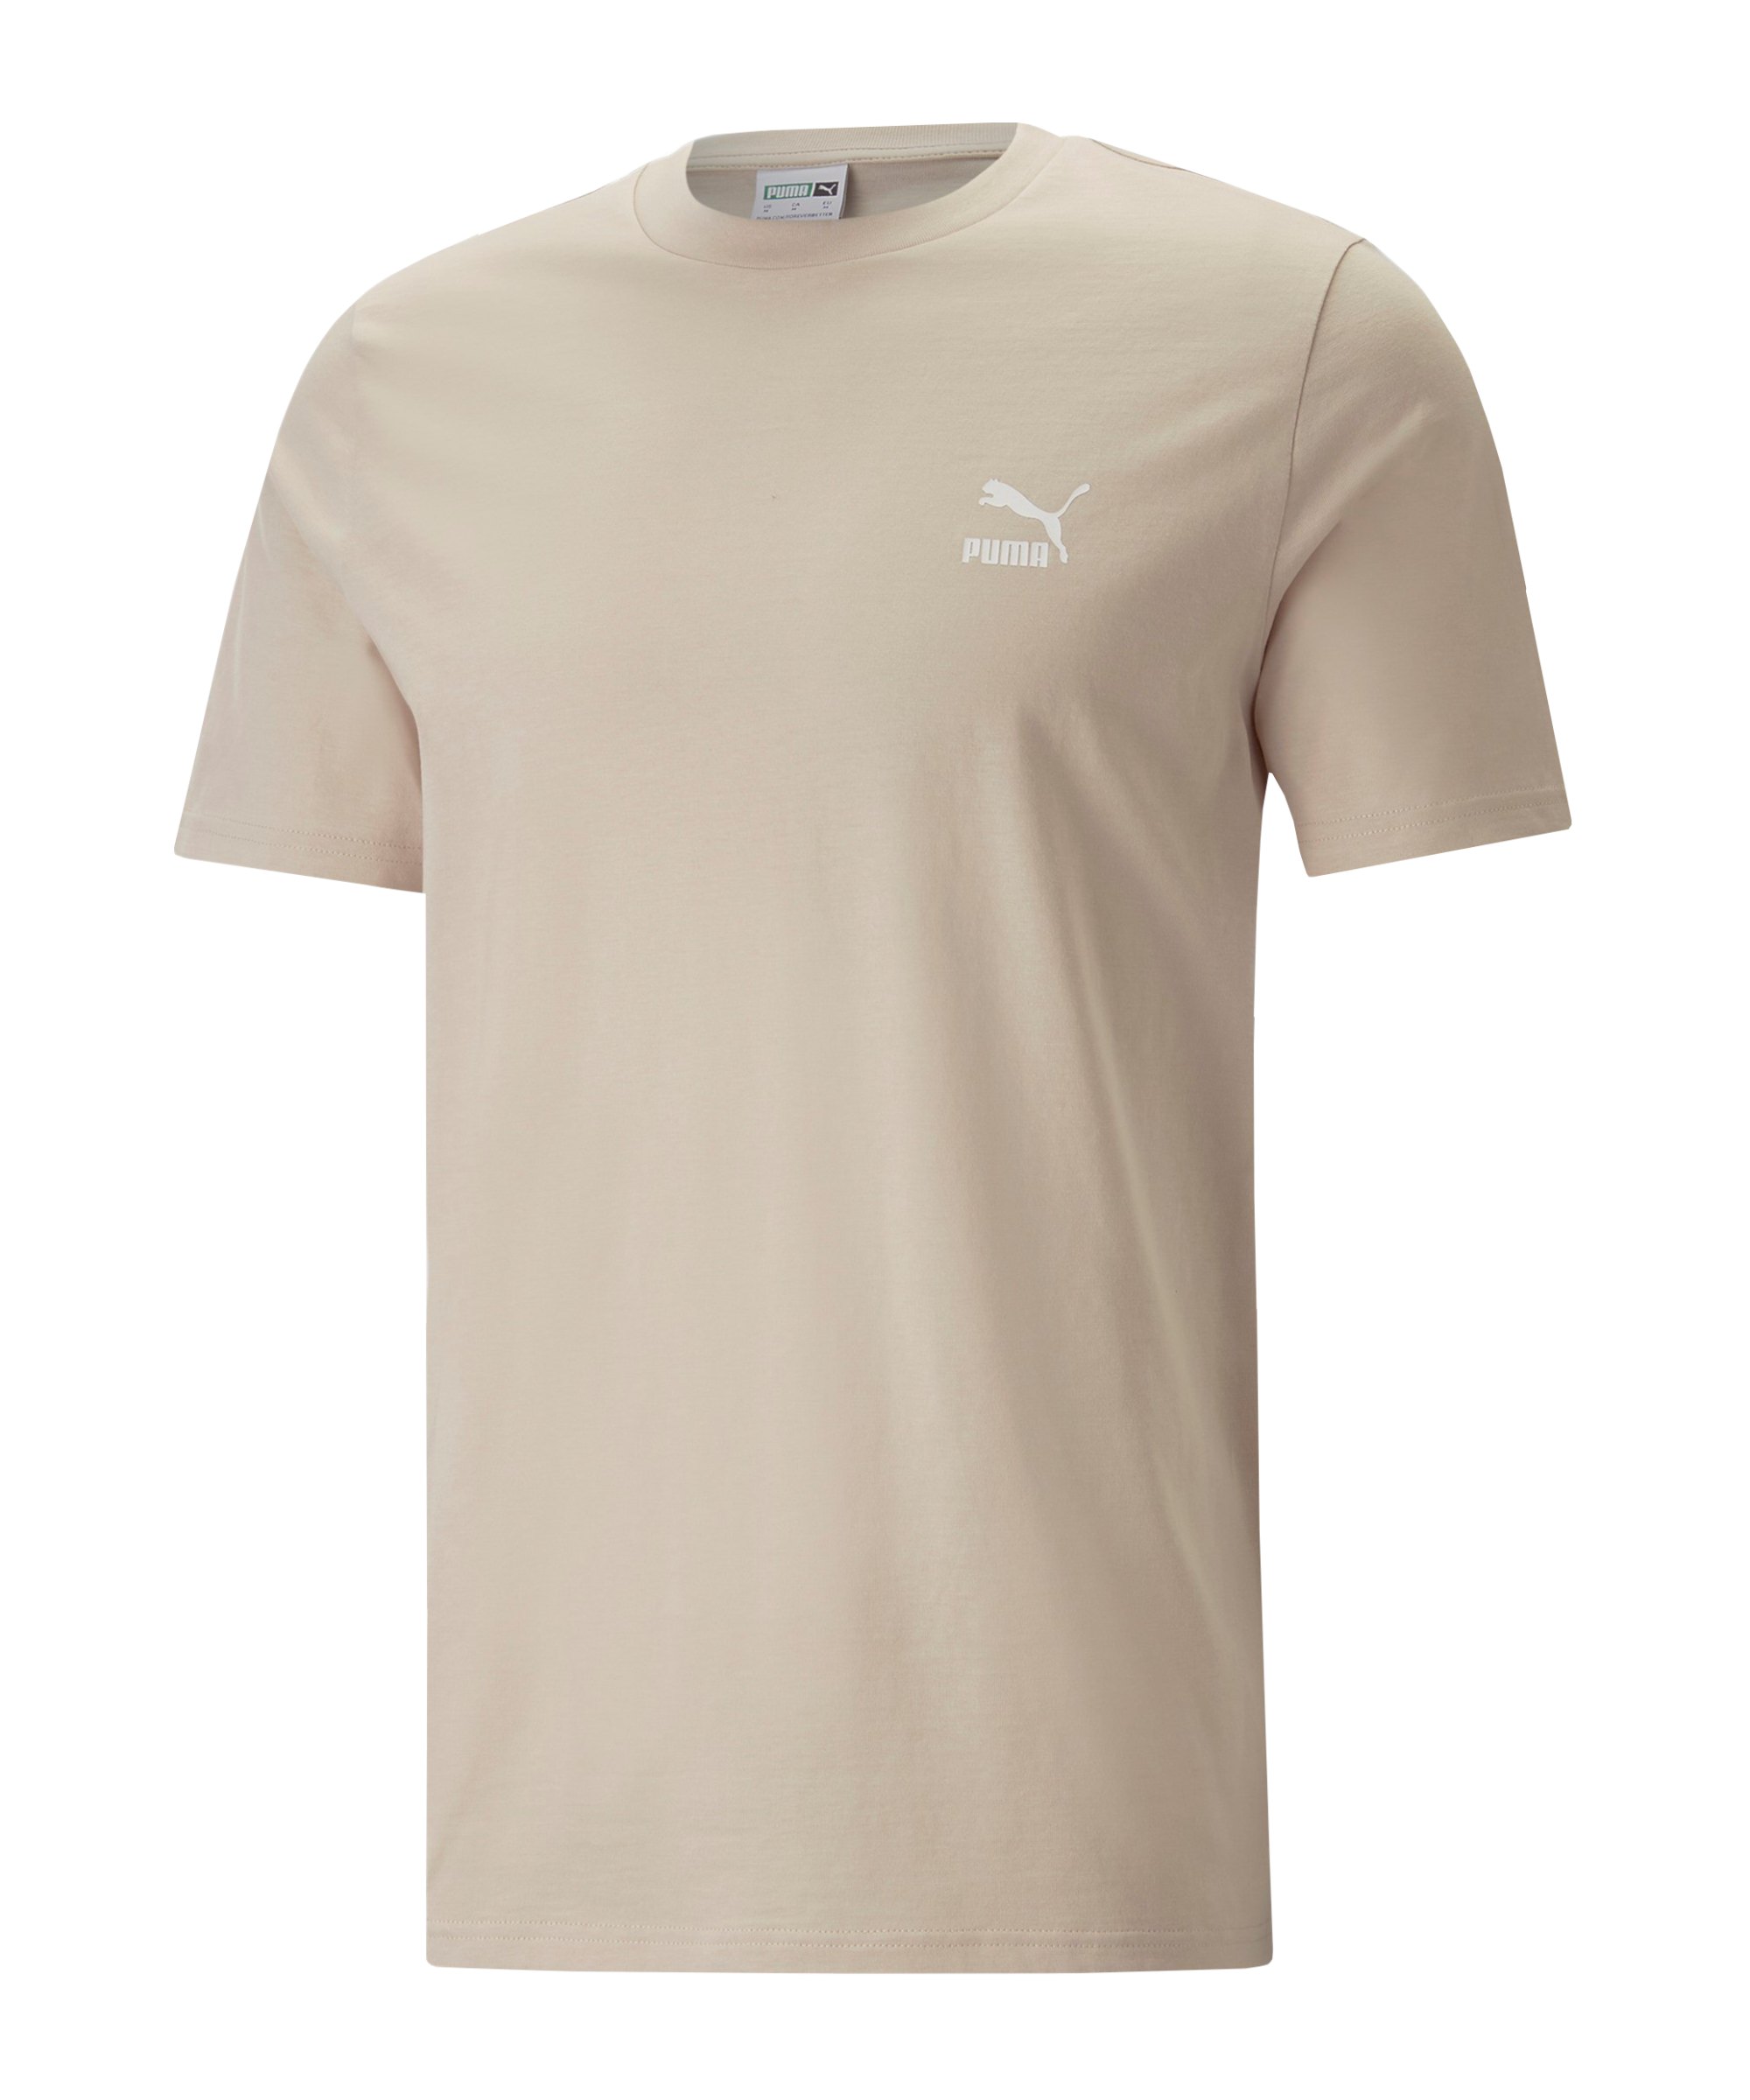 PUMA Classics Small Logo T-Shirt Braun F88 - beige